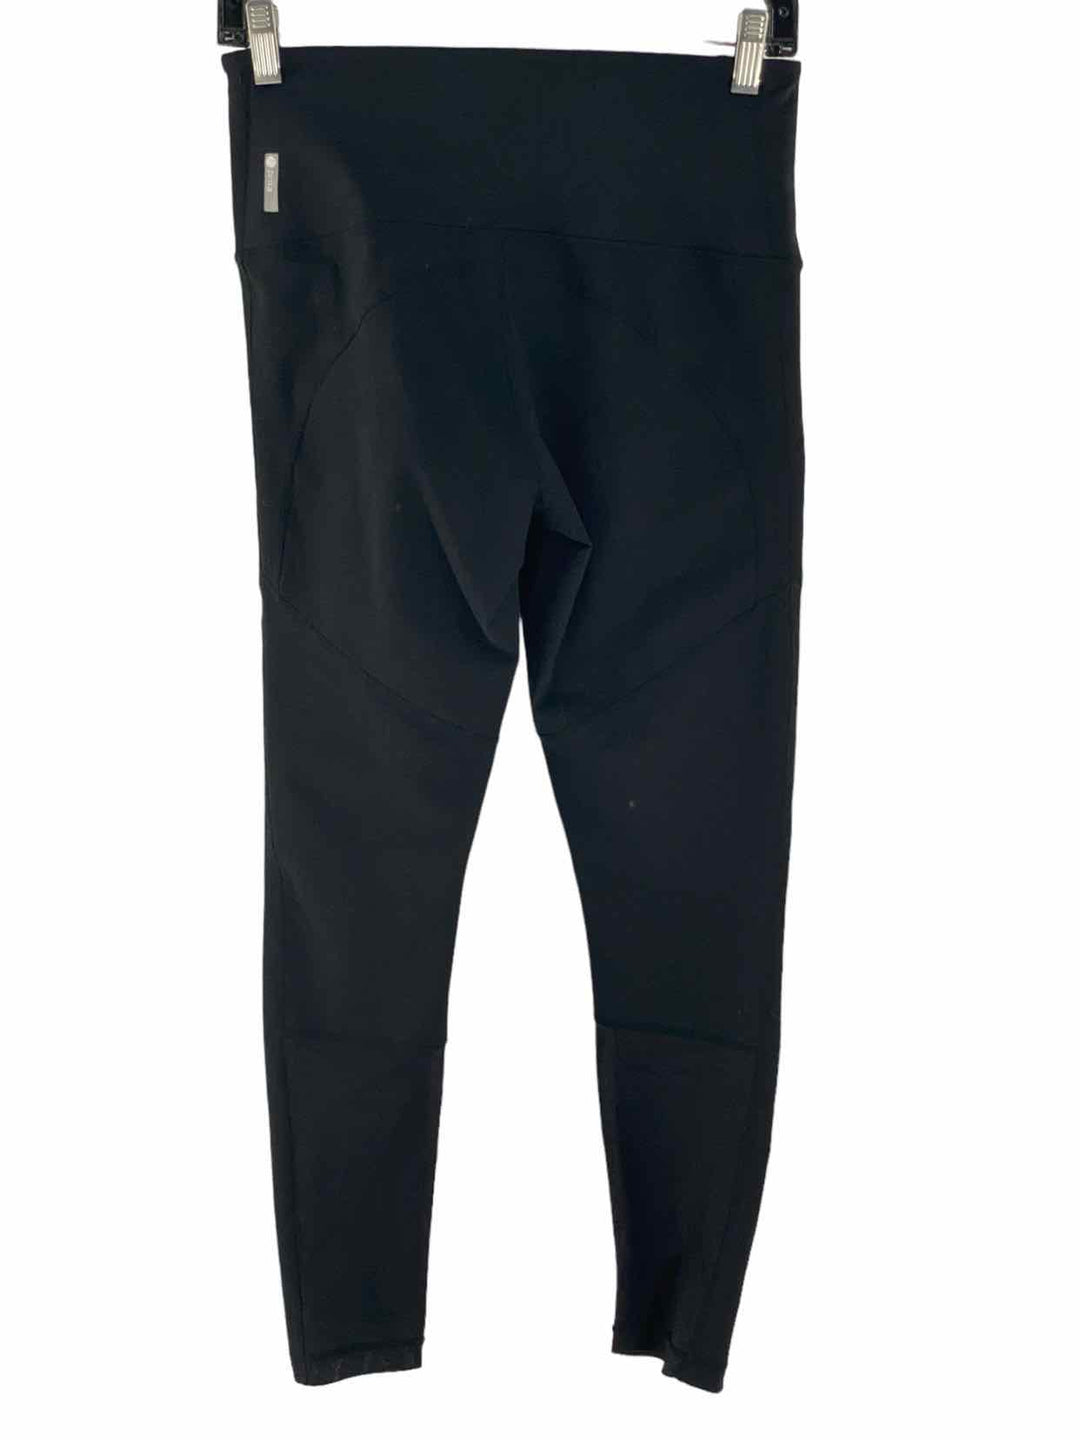 Zella Size M Black Athletic Pants